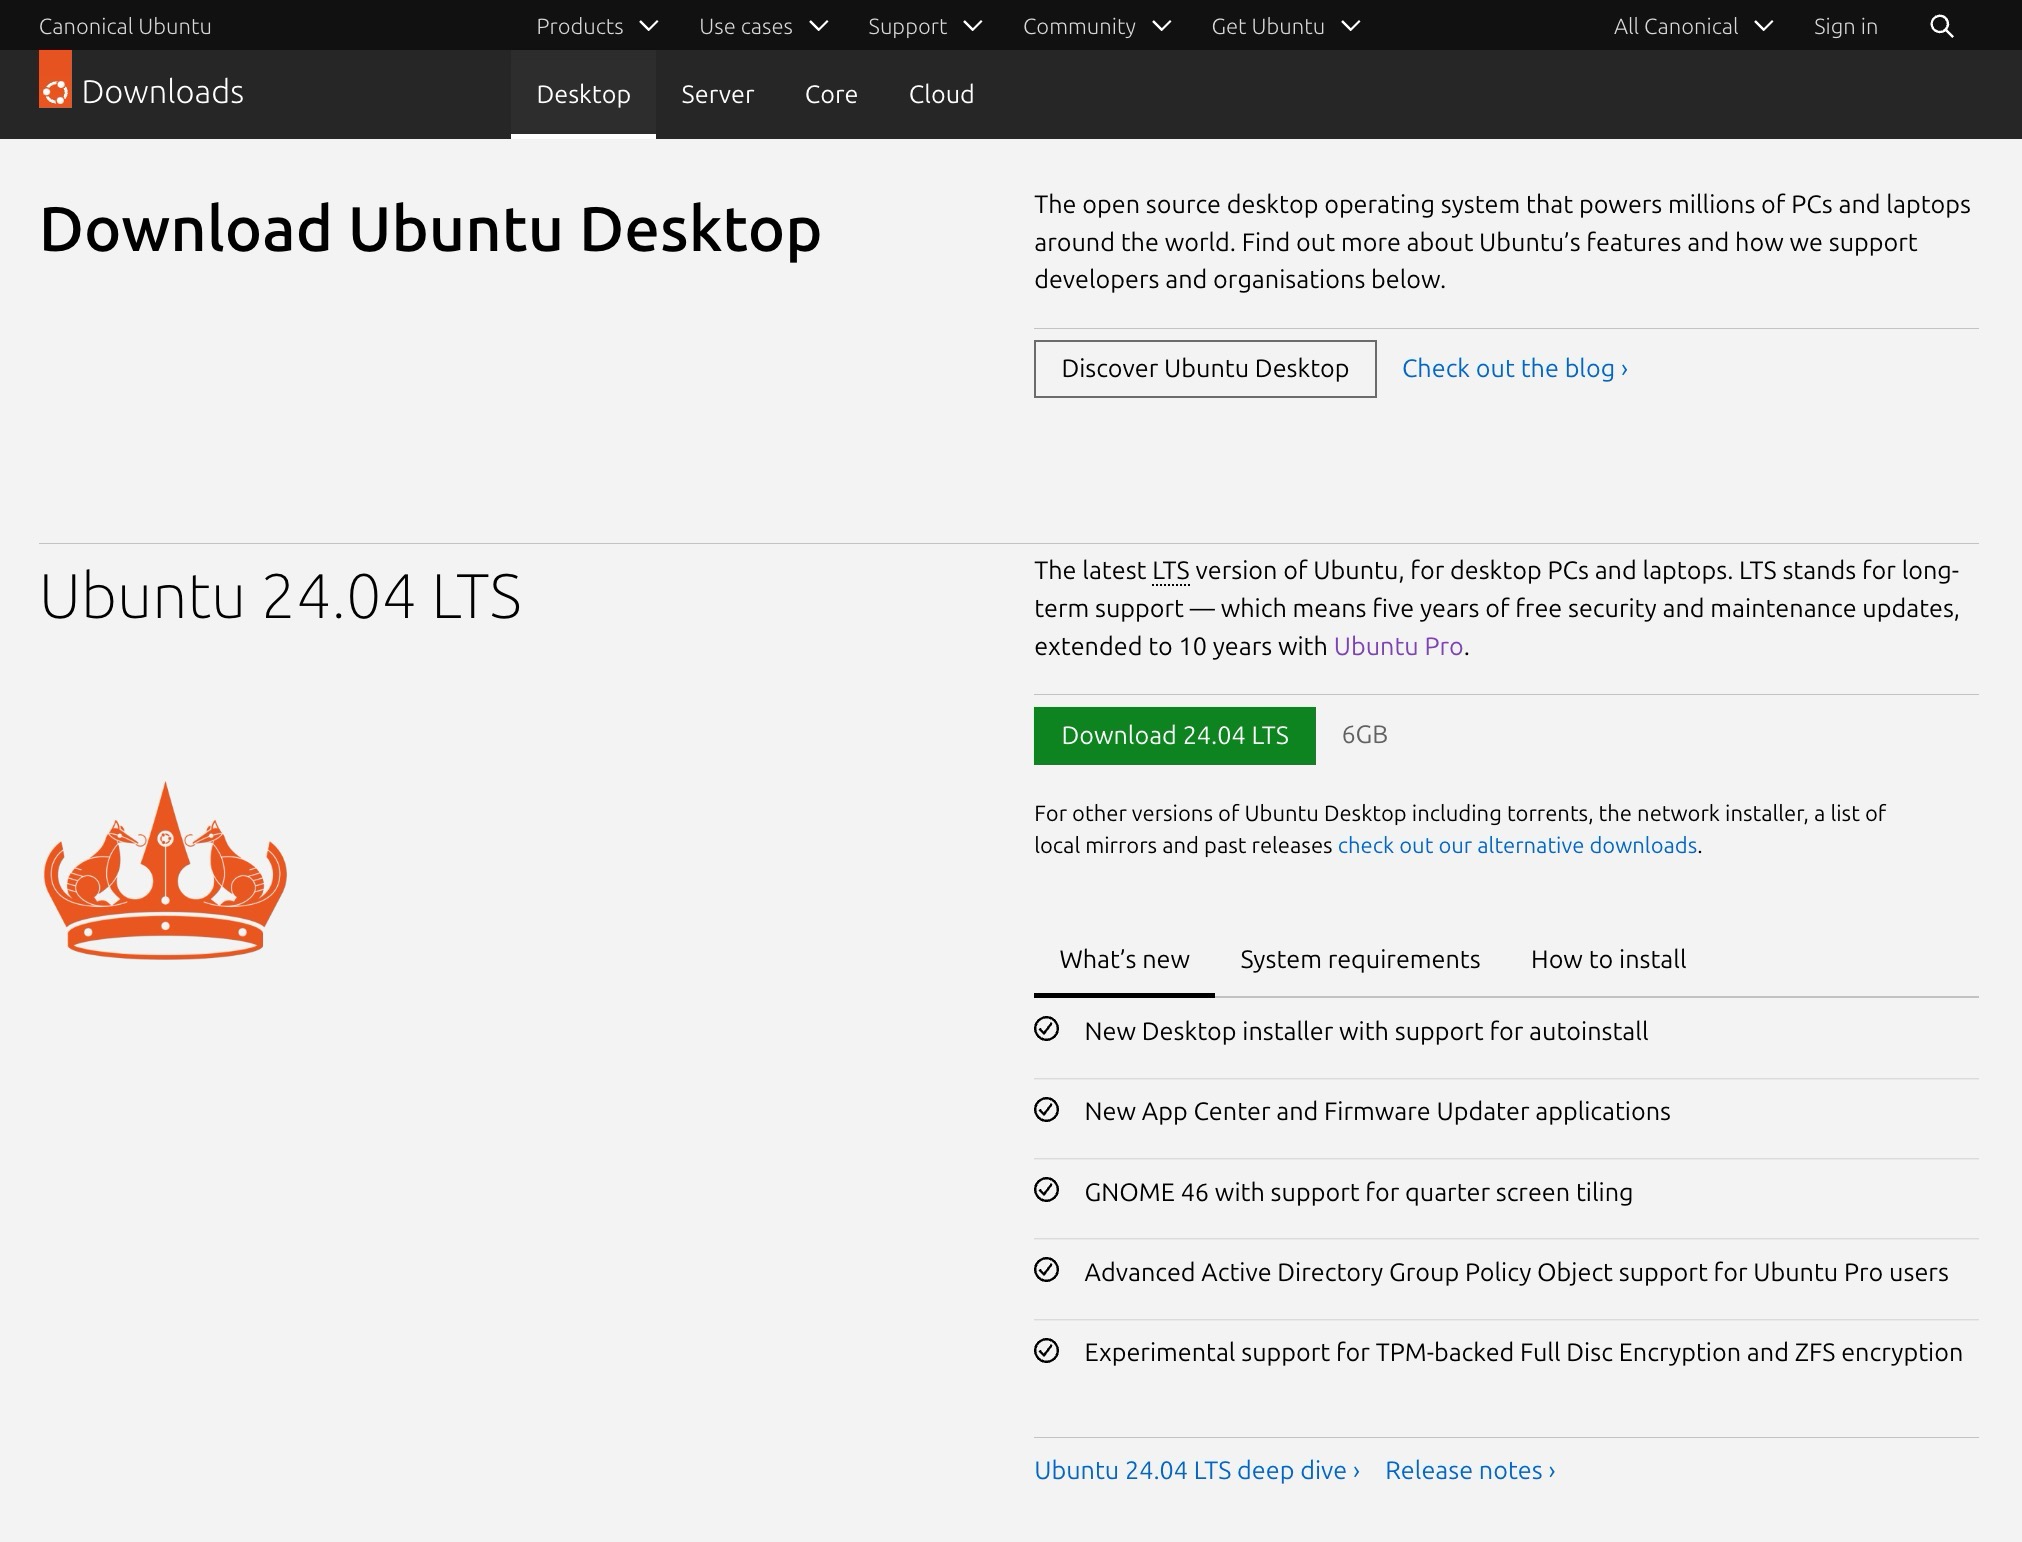 Download von Ubuntu Desktop (hier 24.04 LTS) - ISO-Datei für die Installation herunterladen